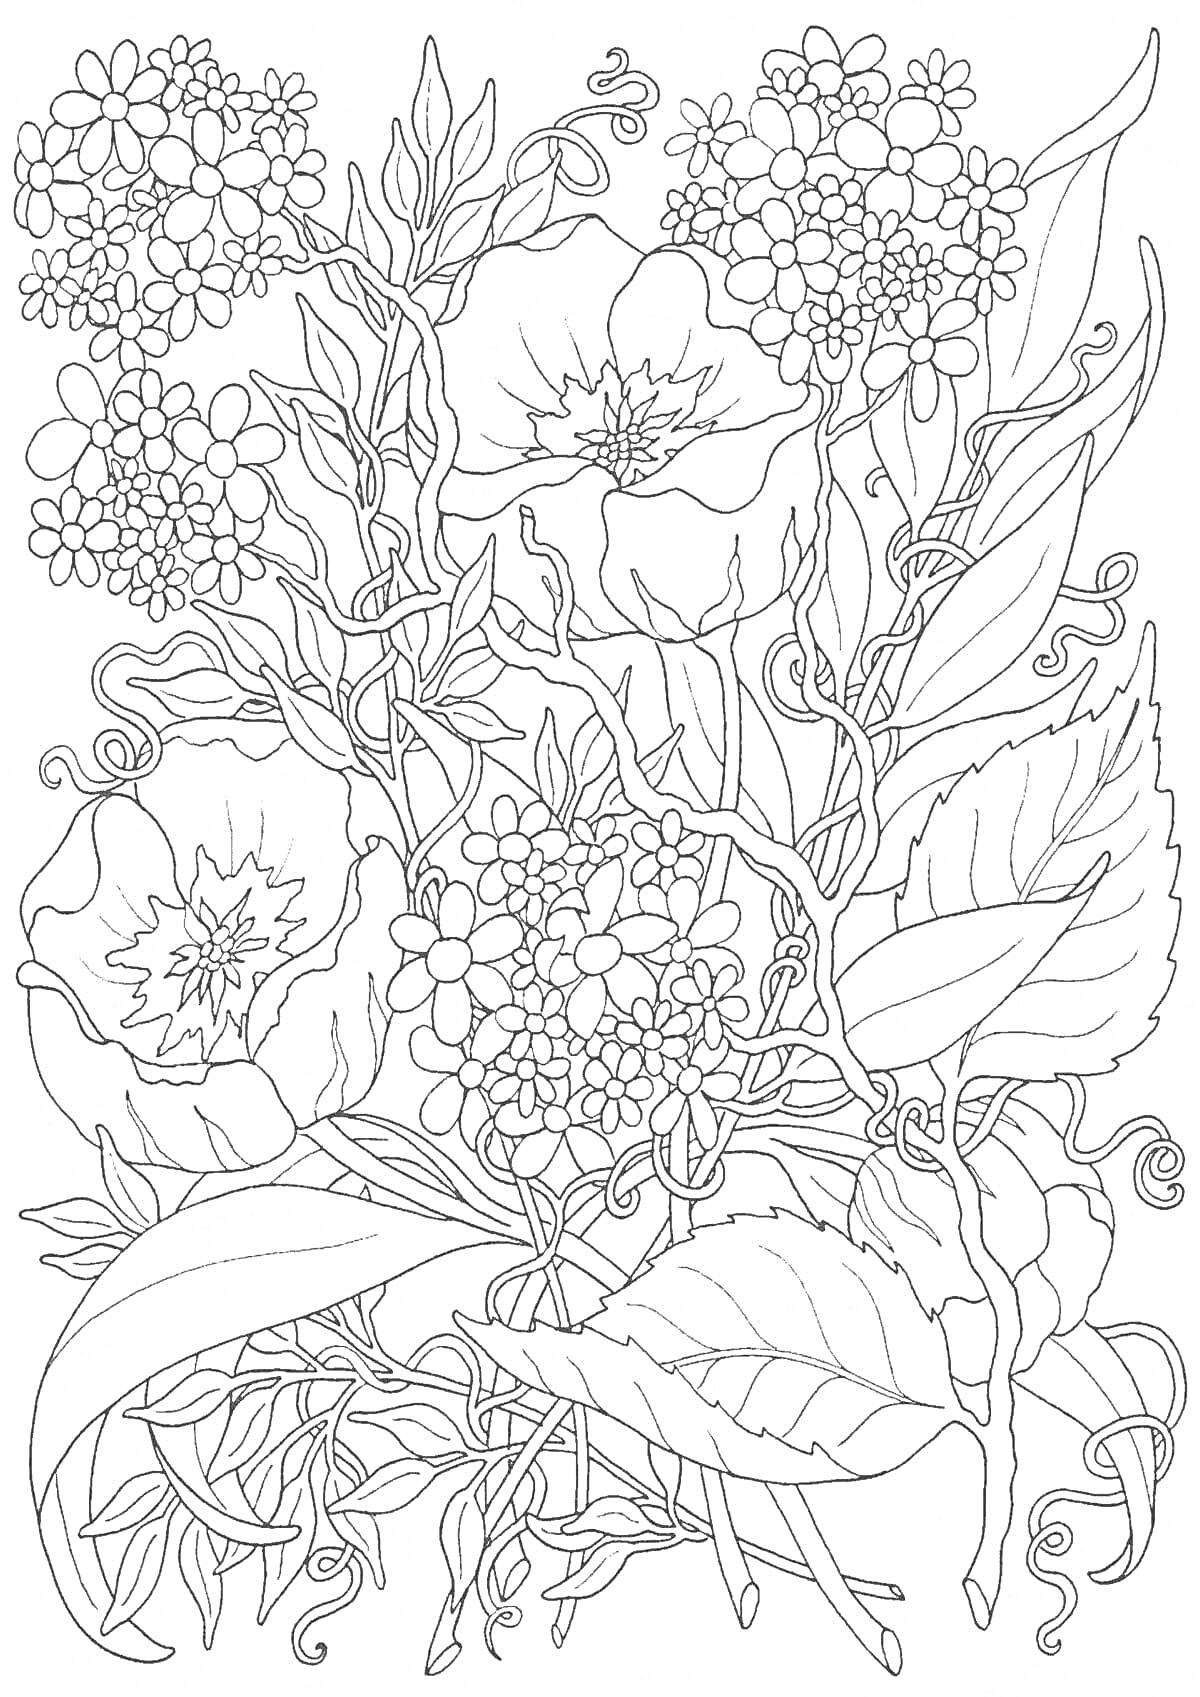 Раскраска Большой букет из маков и мелких цветов с листьями и плетущимися стеблями